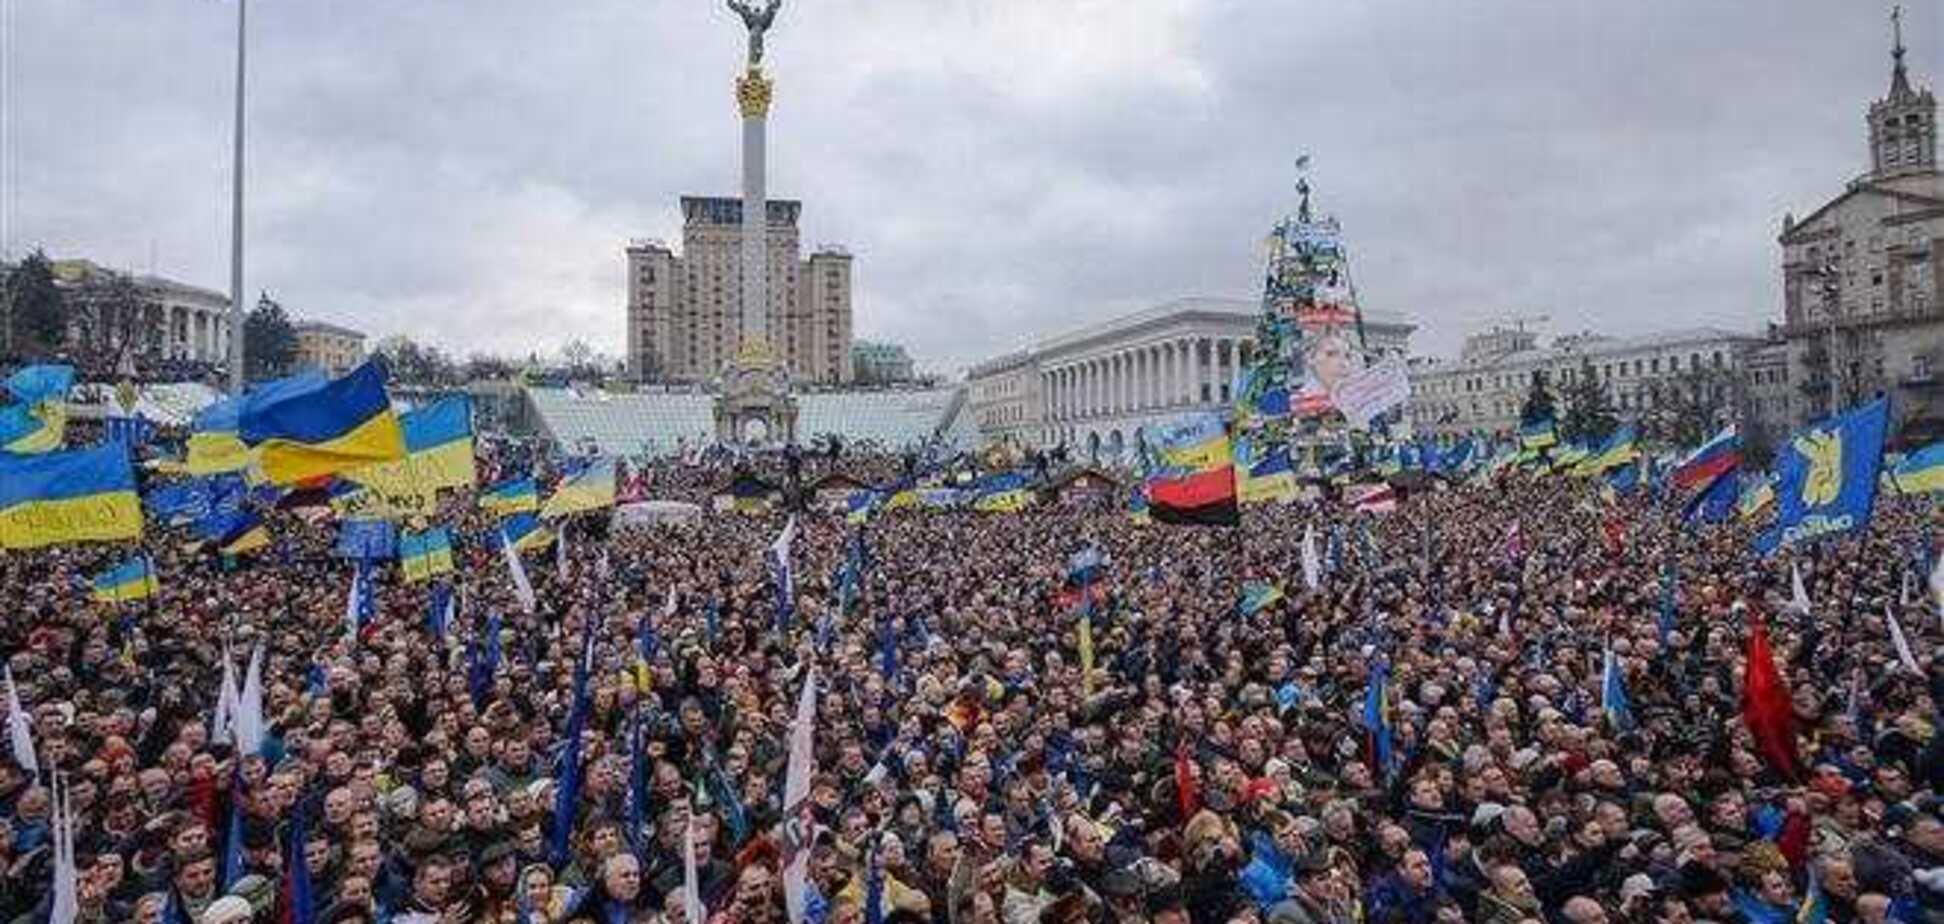 Замість віча на Майдані пройде інформаційний мітинг